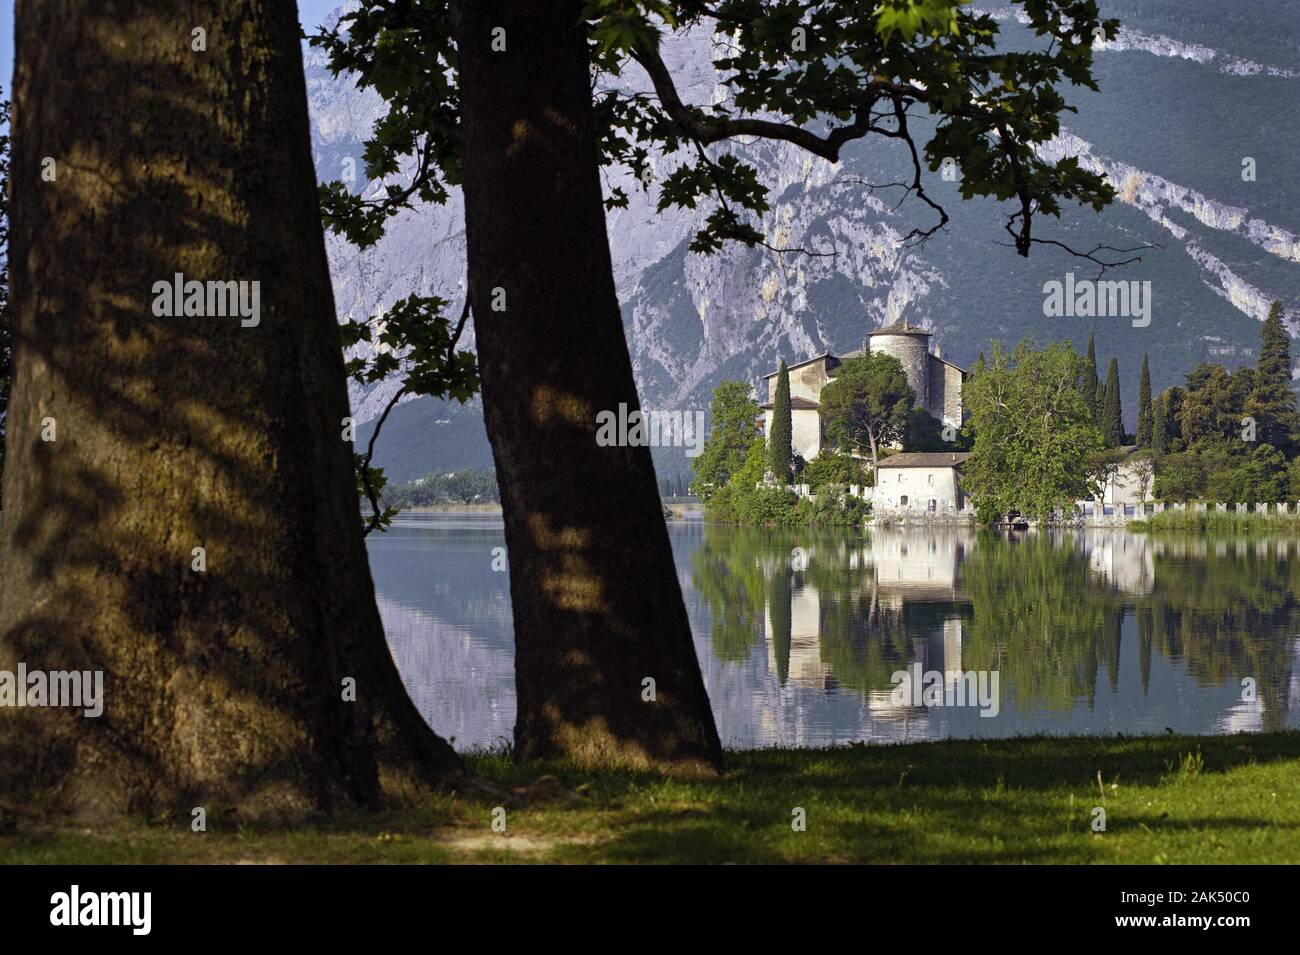 Lago Toblino: Castel Toblino auf einer Halbinsel des Toblinosees am Ende des Valle dei Laghi, Gardasee | usage worldwide Stock Photo